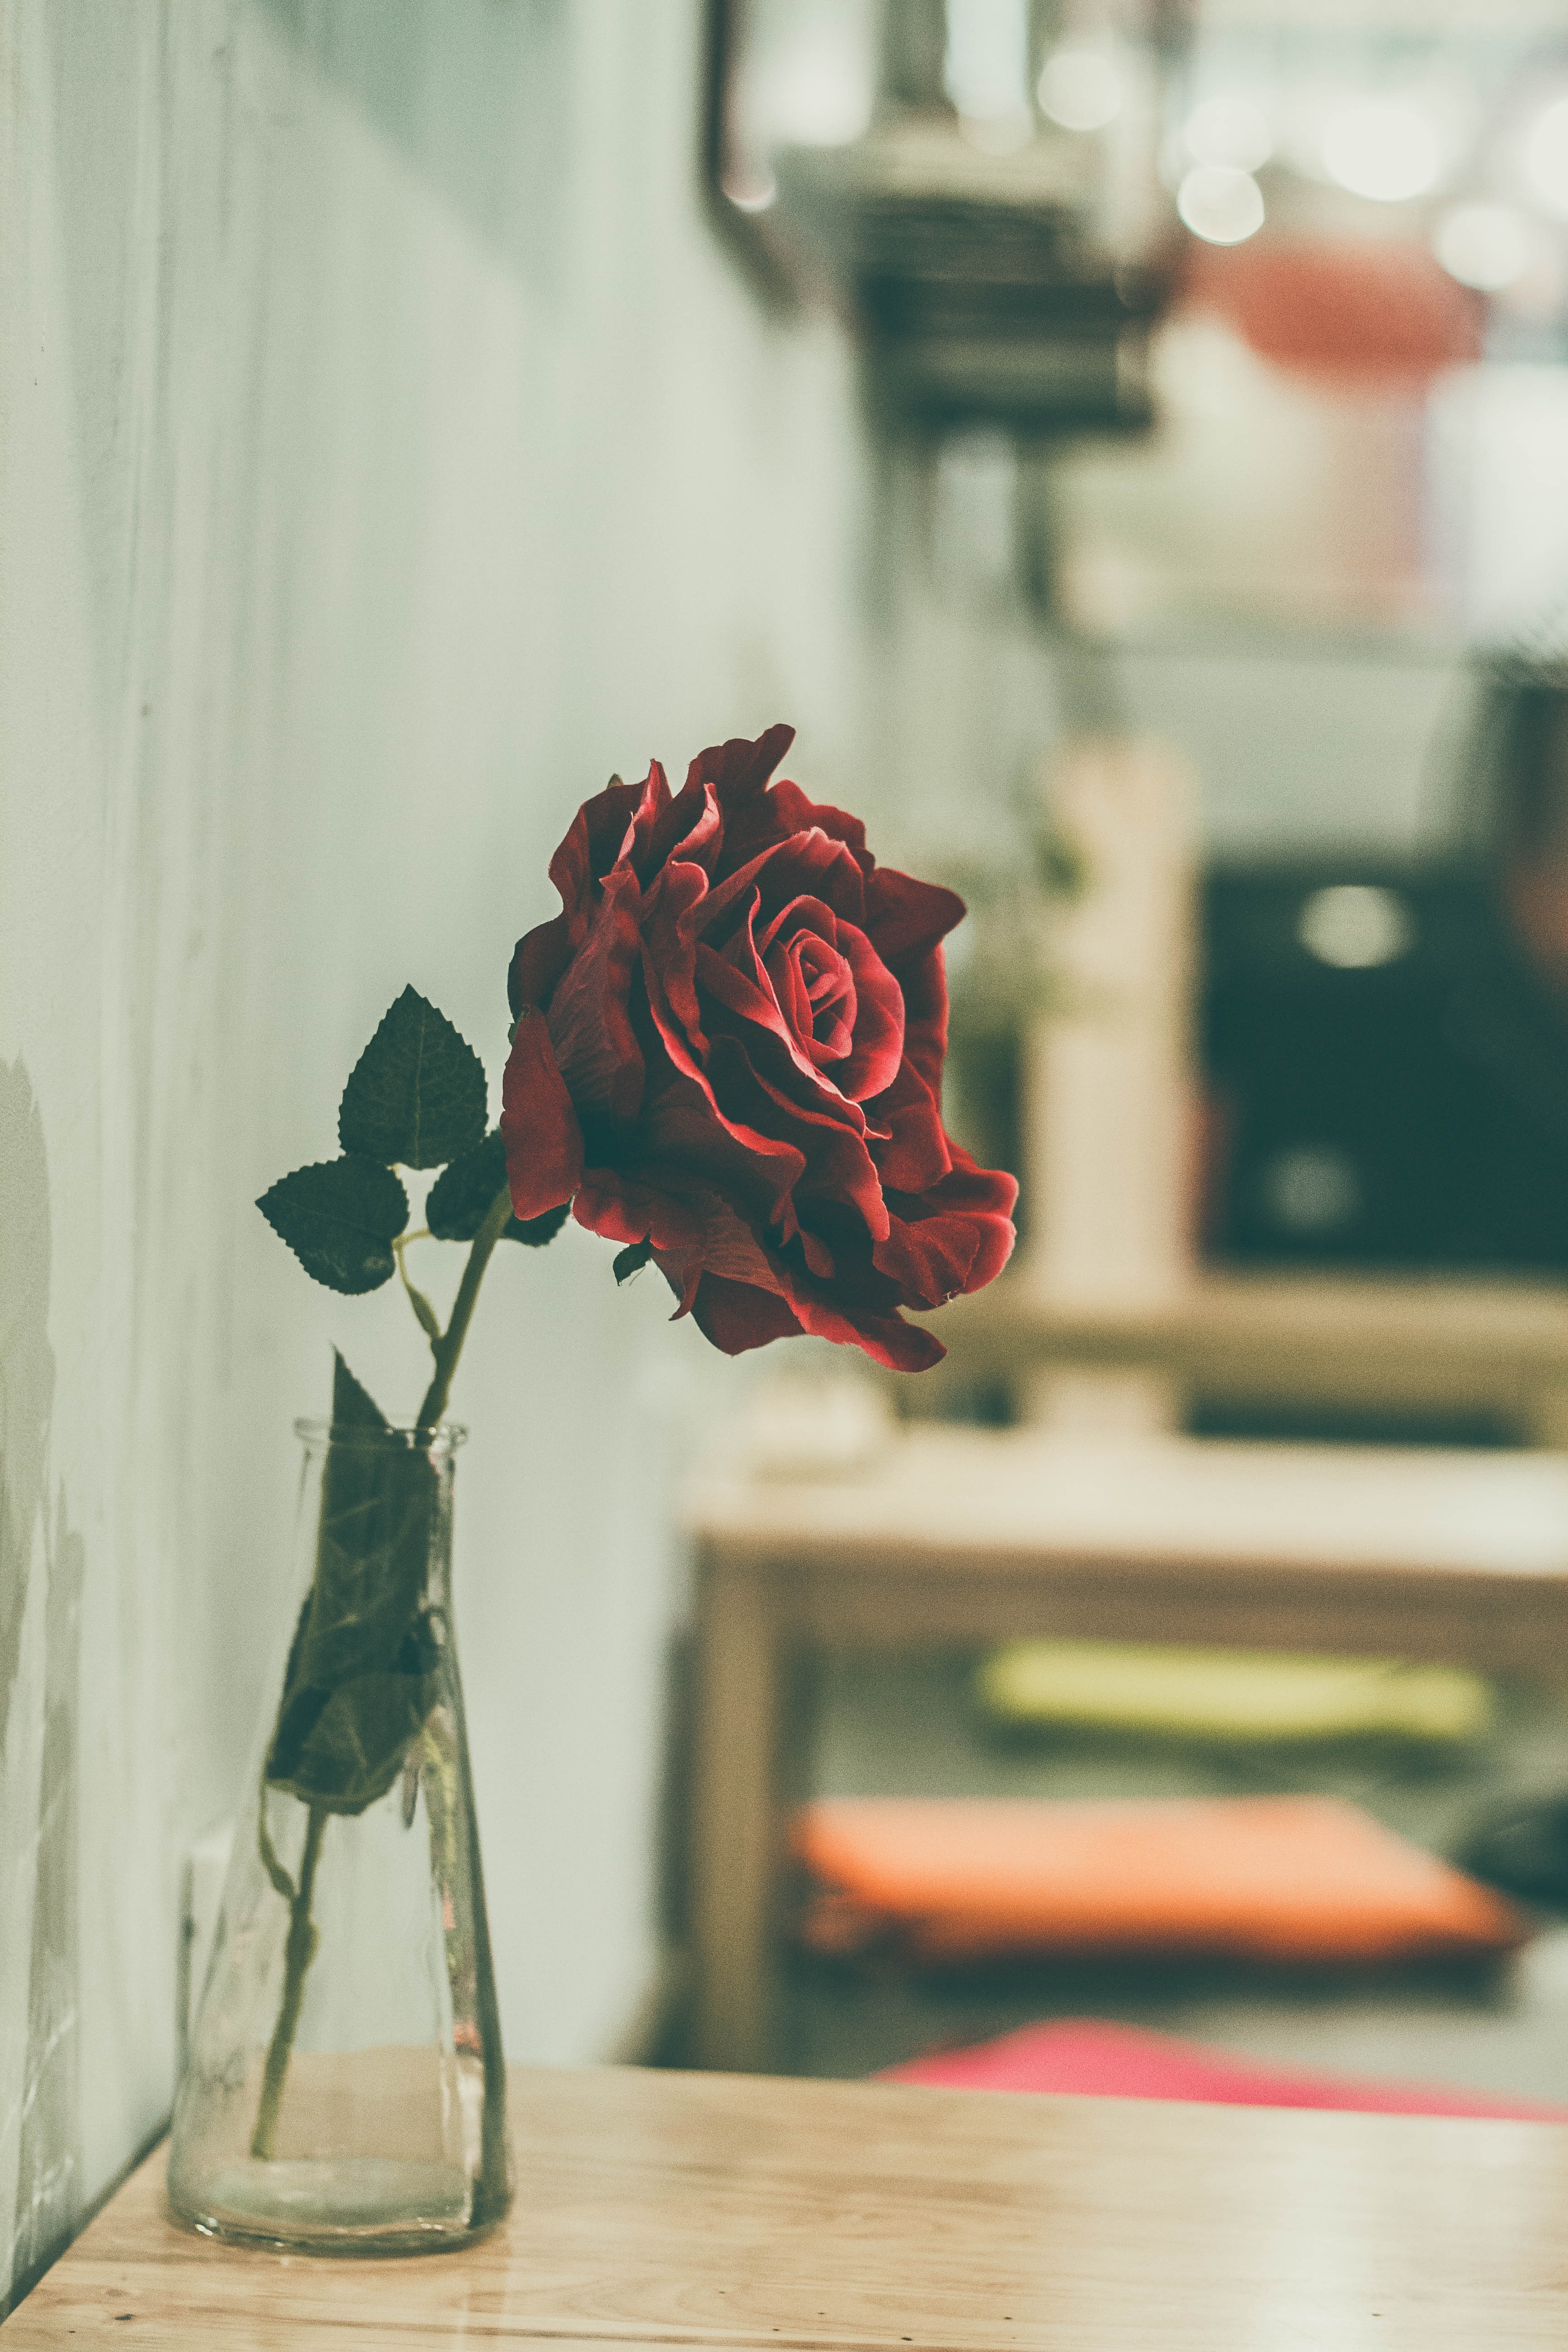 Download Original Image Online Crop - Single Red Rose In A Vase , HD Wallpaper & Backgrounds